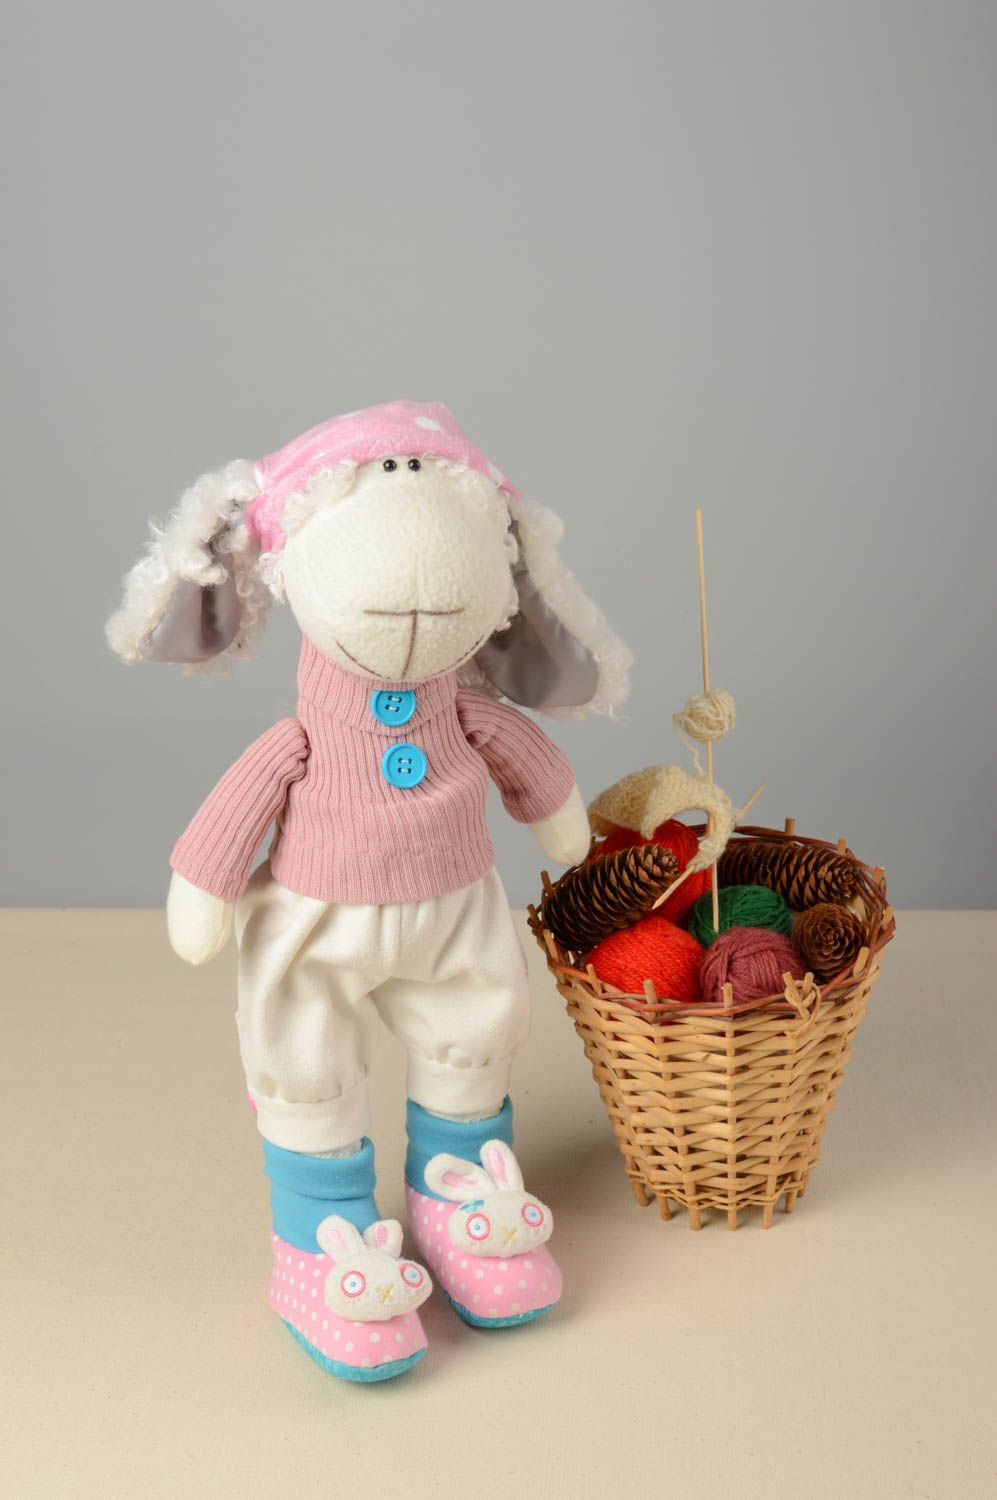 Textil Kuscheltier Schaf in rosa Kleidung niedlich Spielzeug für Kinder und Deko foto 1